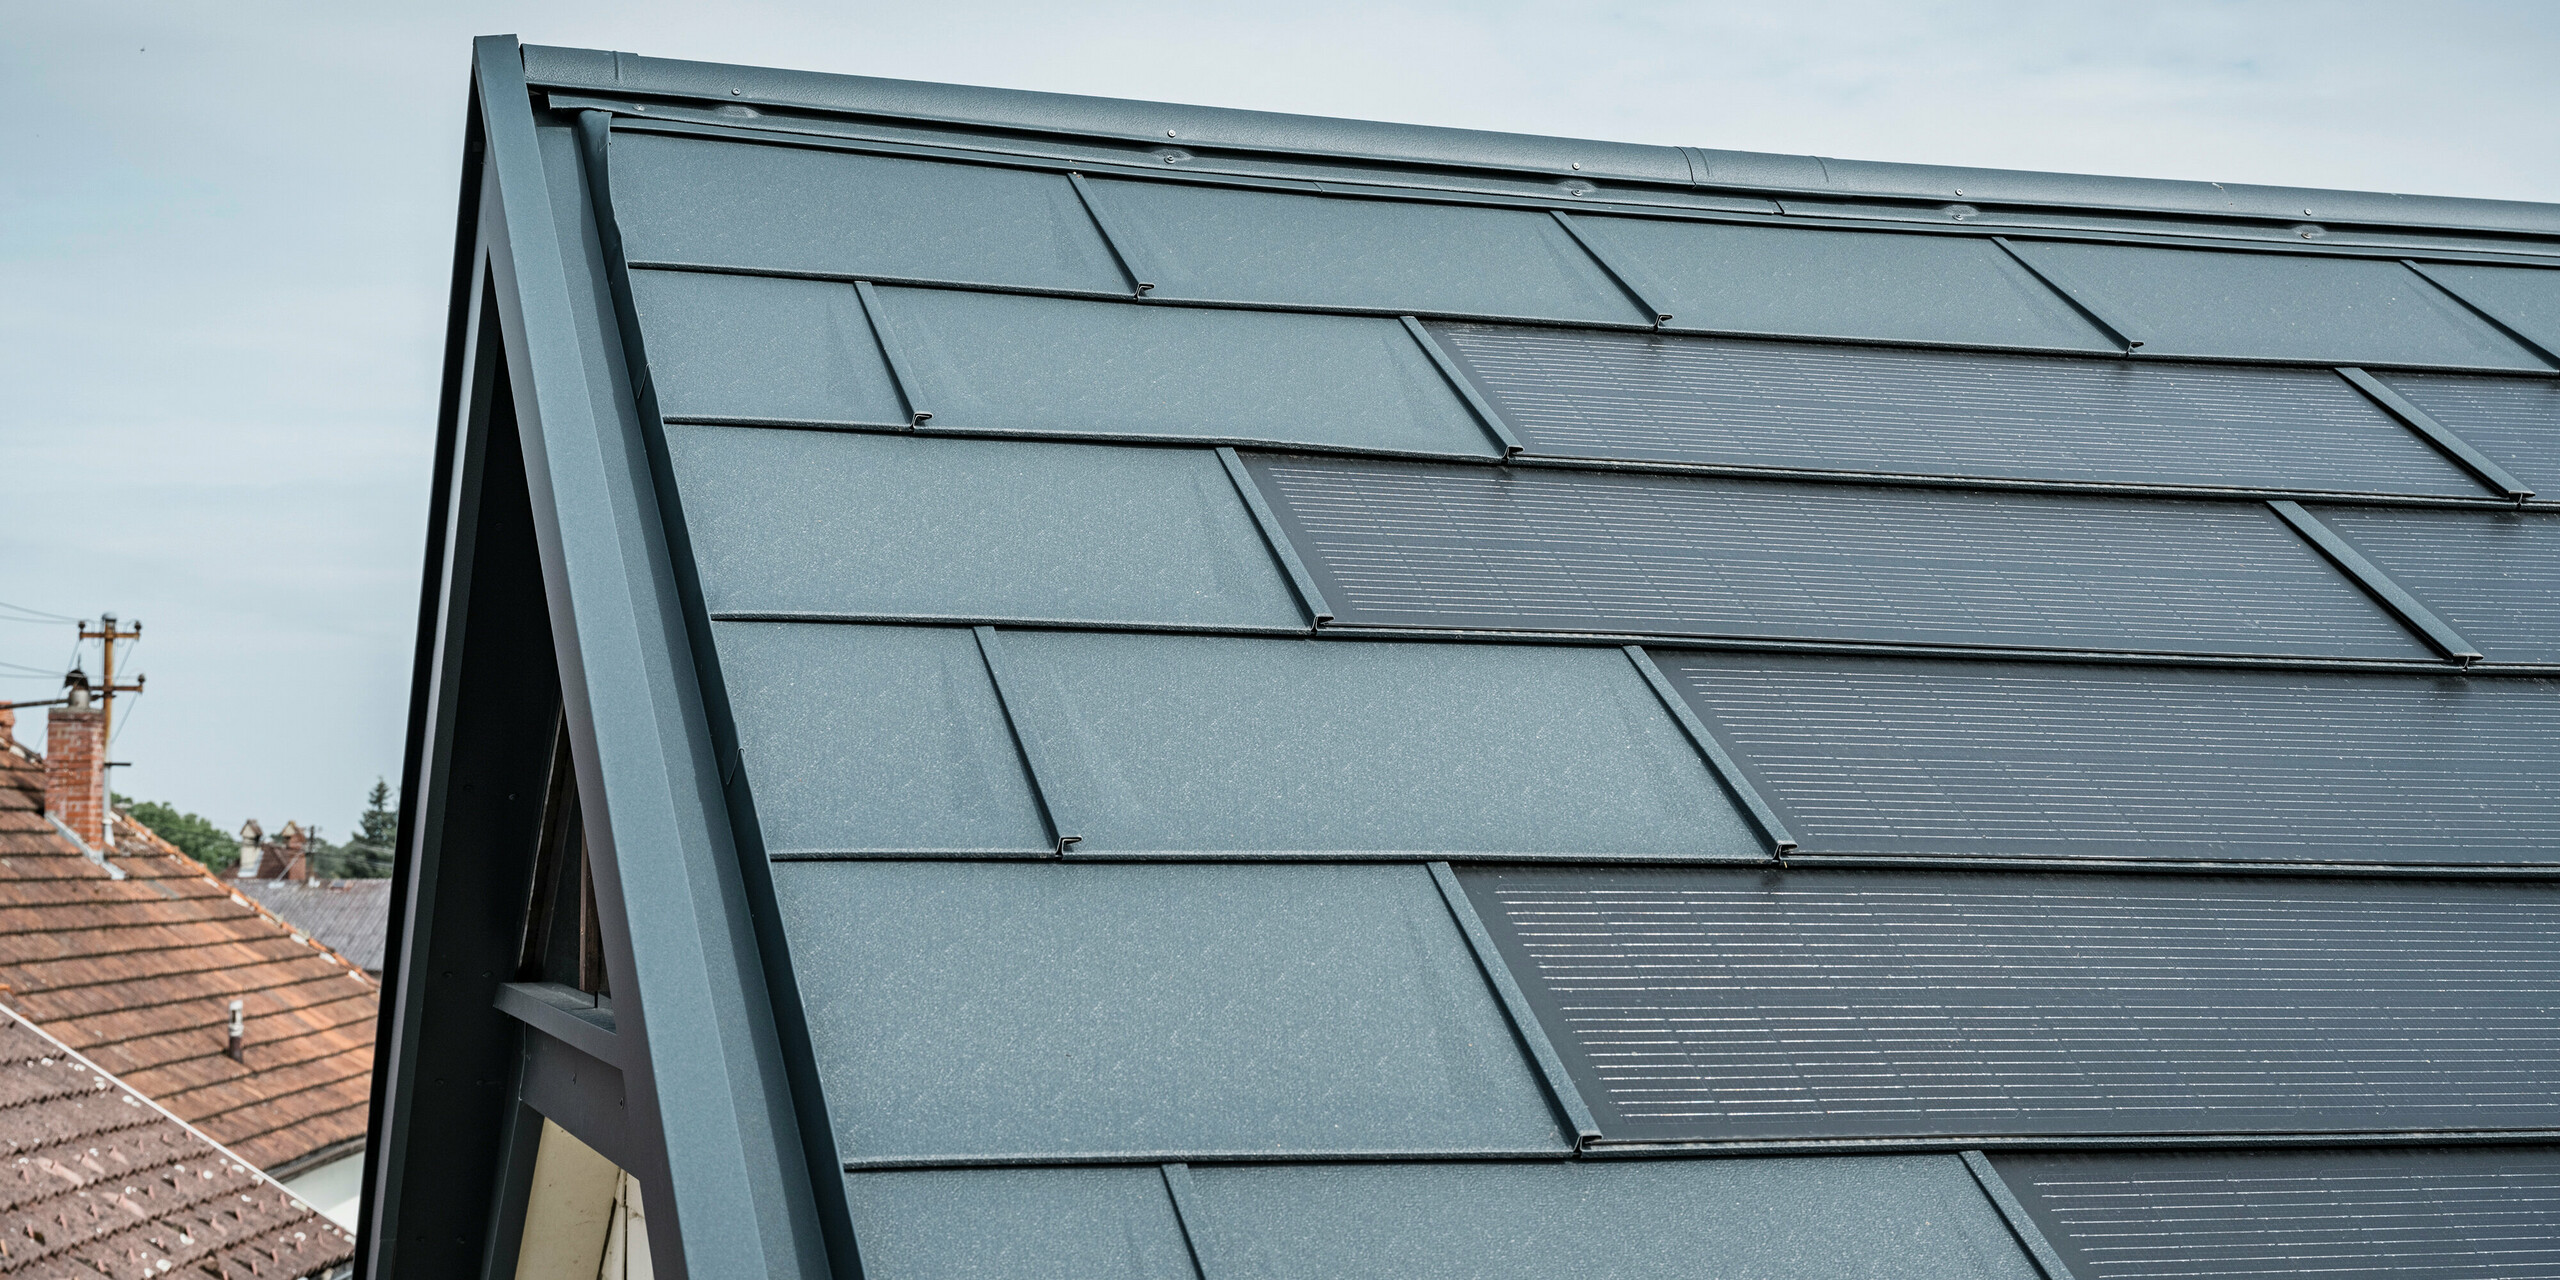 Podroben pogled na streho hiše, ki je opremljena z inovativno PREFA solarno strešno ploščo. Strešne plošče z integriranimi fotovoltaičnimi celicami so v elegantni antracitni barvi. Homogena površina se brezhibno zliva s streho in tako ustvarja moderen in čist videz. Inovativni strešni sistem zagotavlja učinkovito rabo energije, ne da bi ob tem ogrožal estetiko.